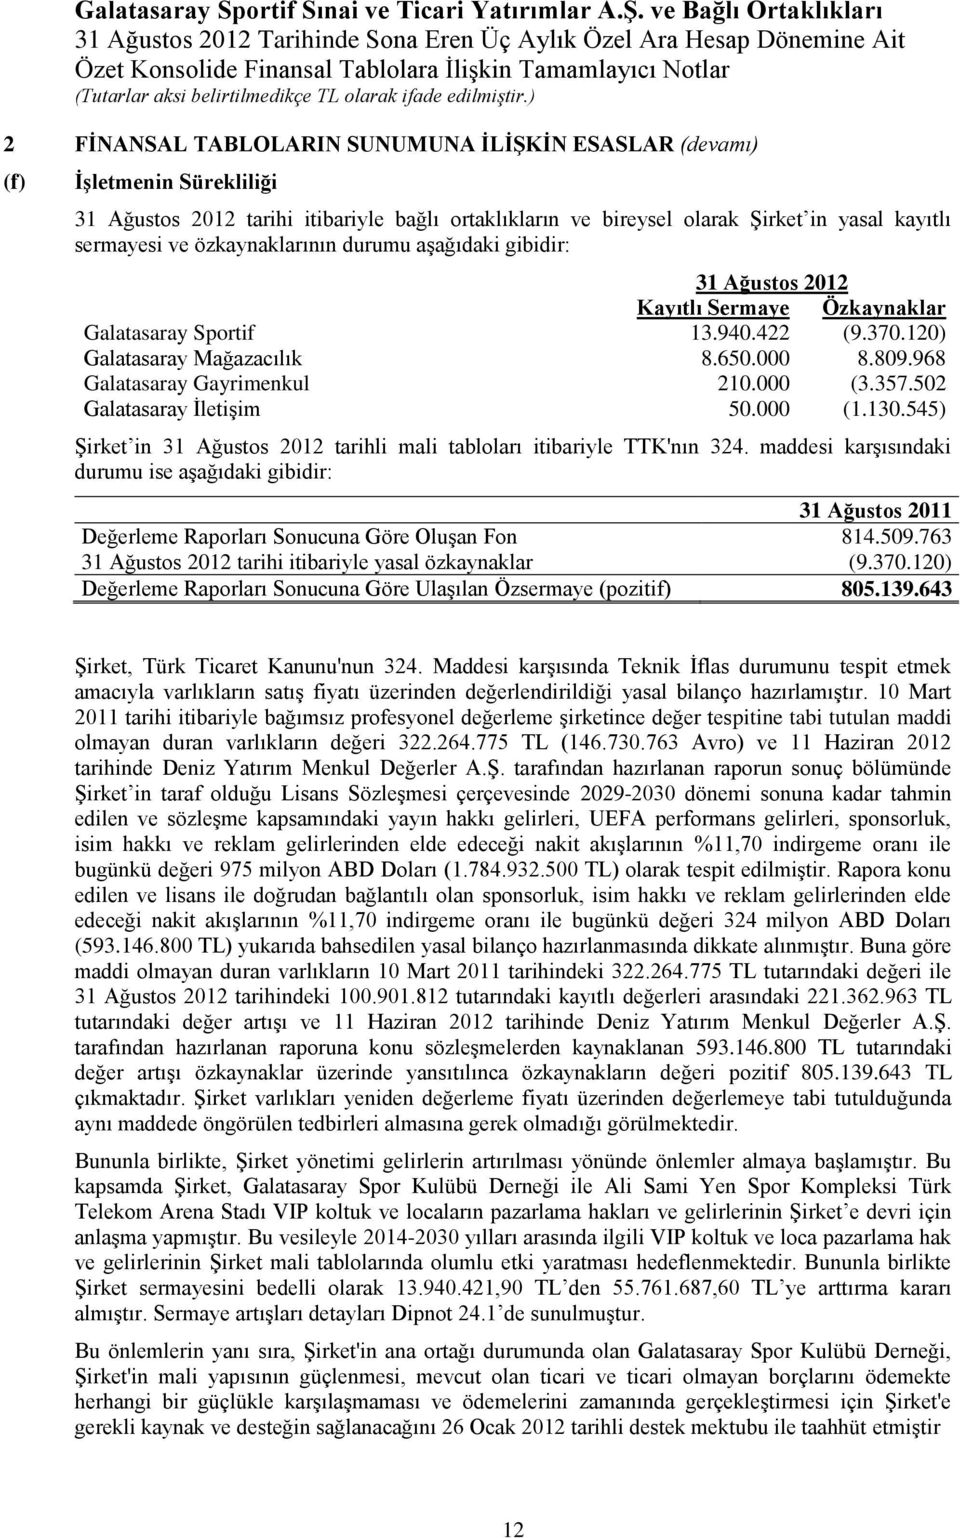 968 Galatasaray Gayrimenkul 210.000 (3.357.502 Galatasaray İletişim 50.000 (1.130.545) Şirket in 31 Ağustos 2012 tarihli mali tabloları itibariyle TTK'nın 324.